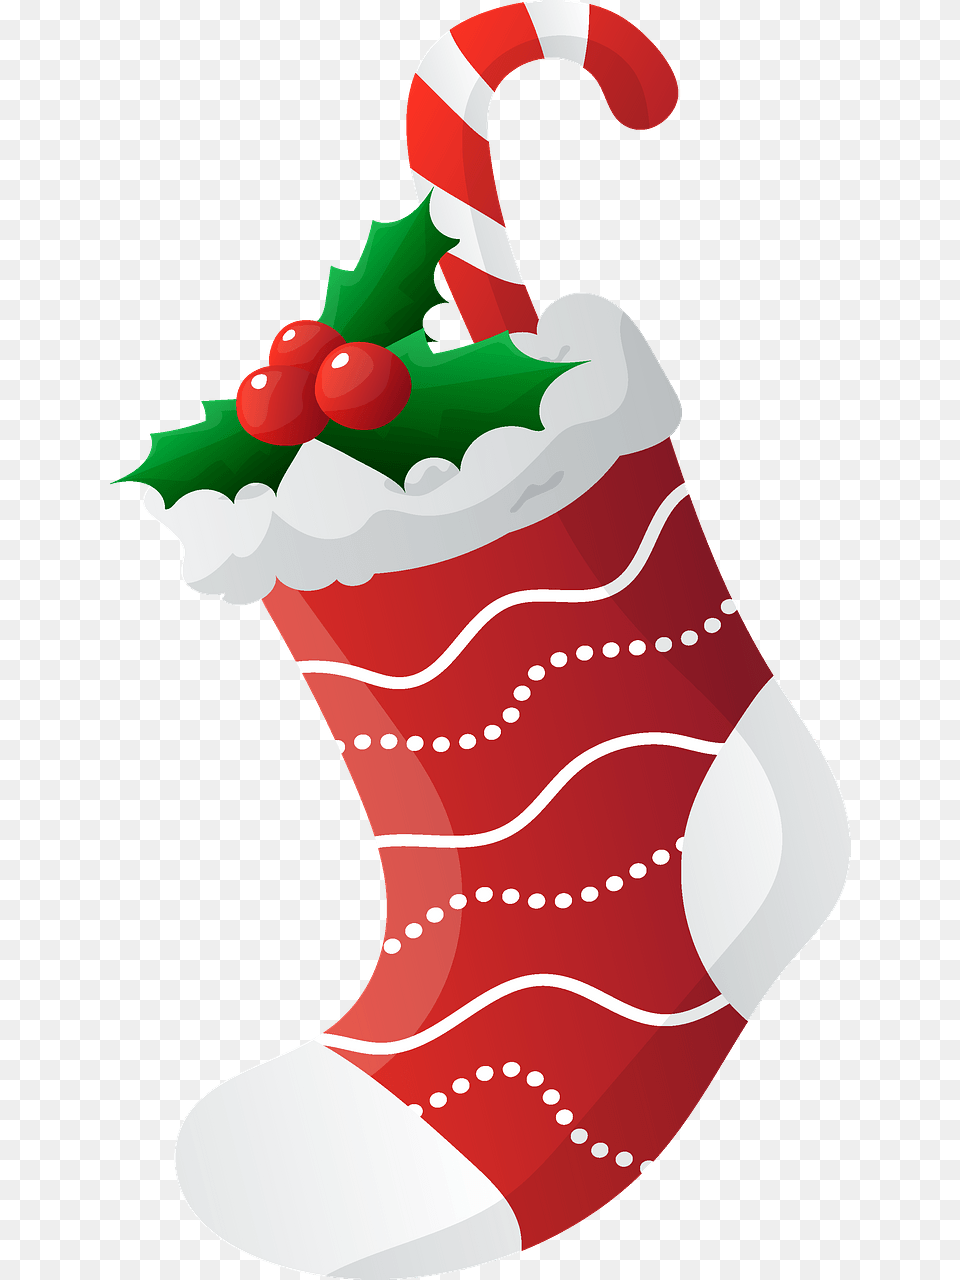 Illustration, Stocking, Hosiery, Clothing, Christmas Png Image